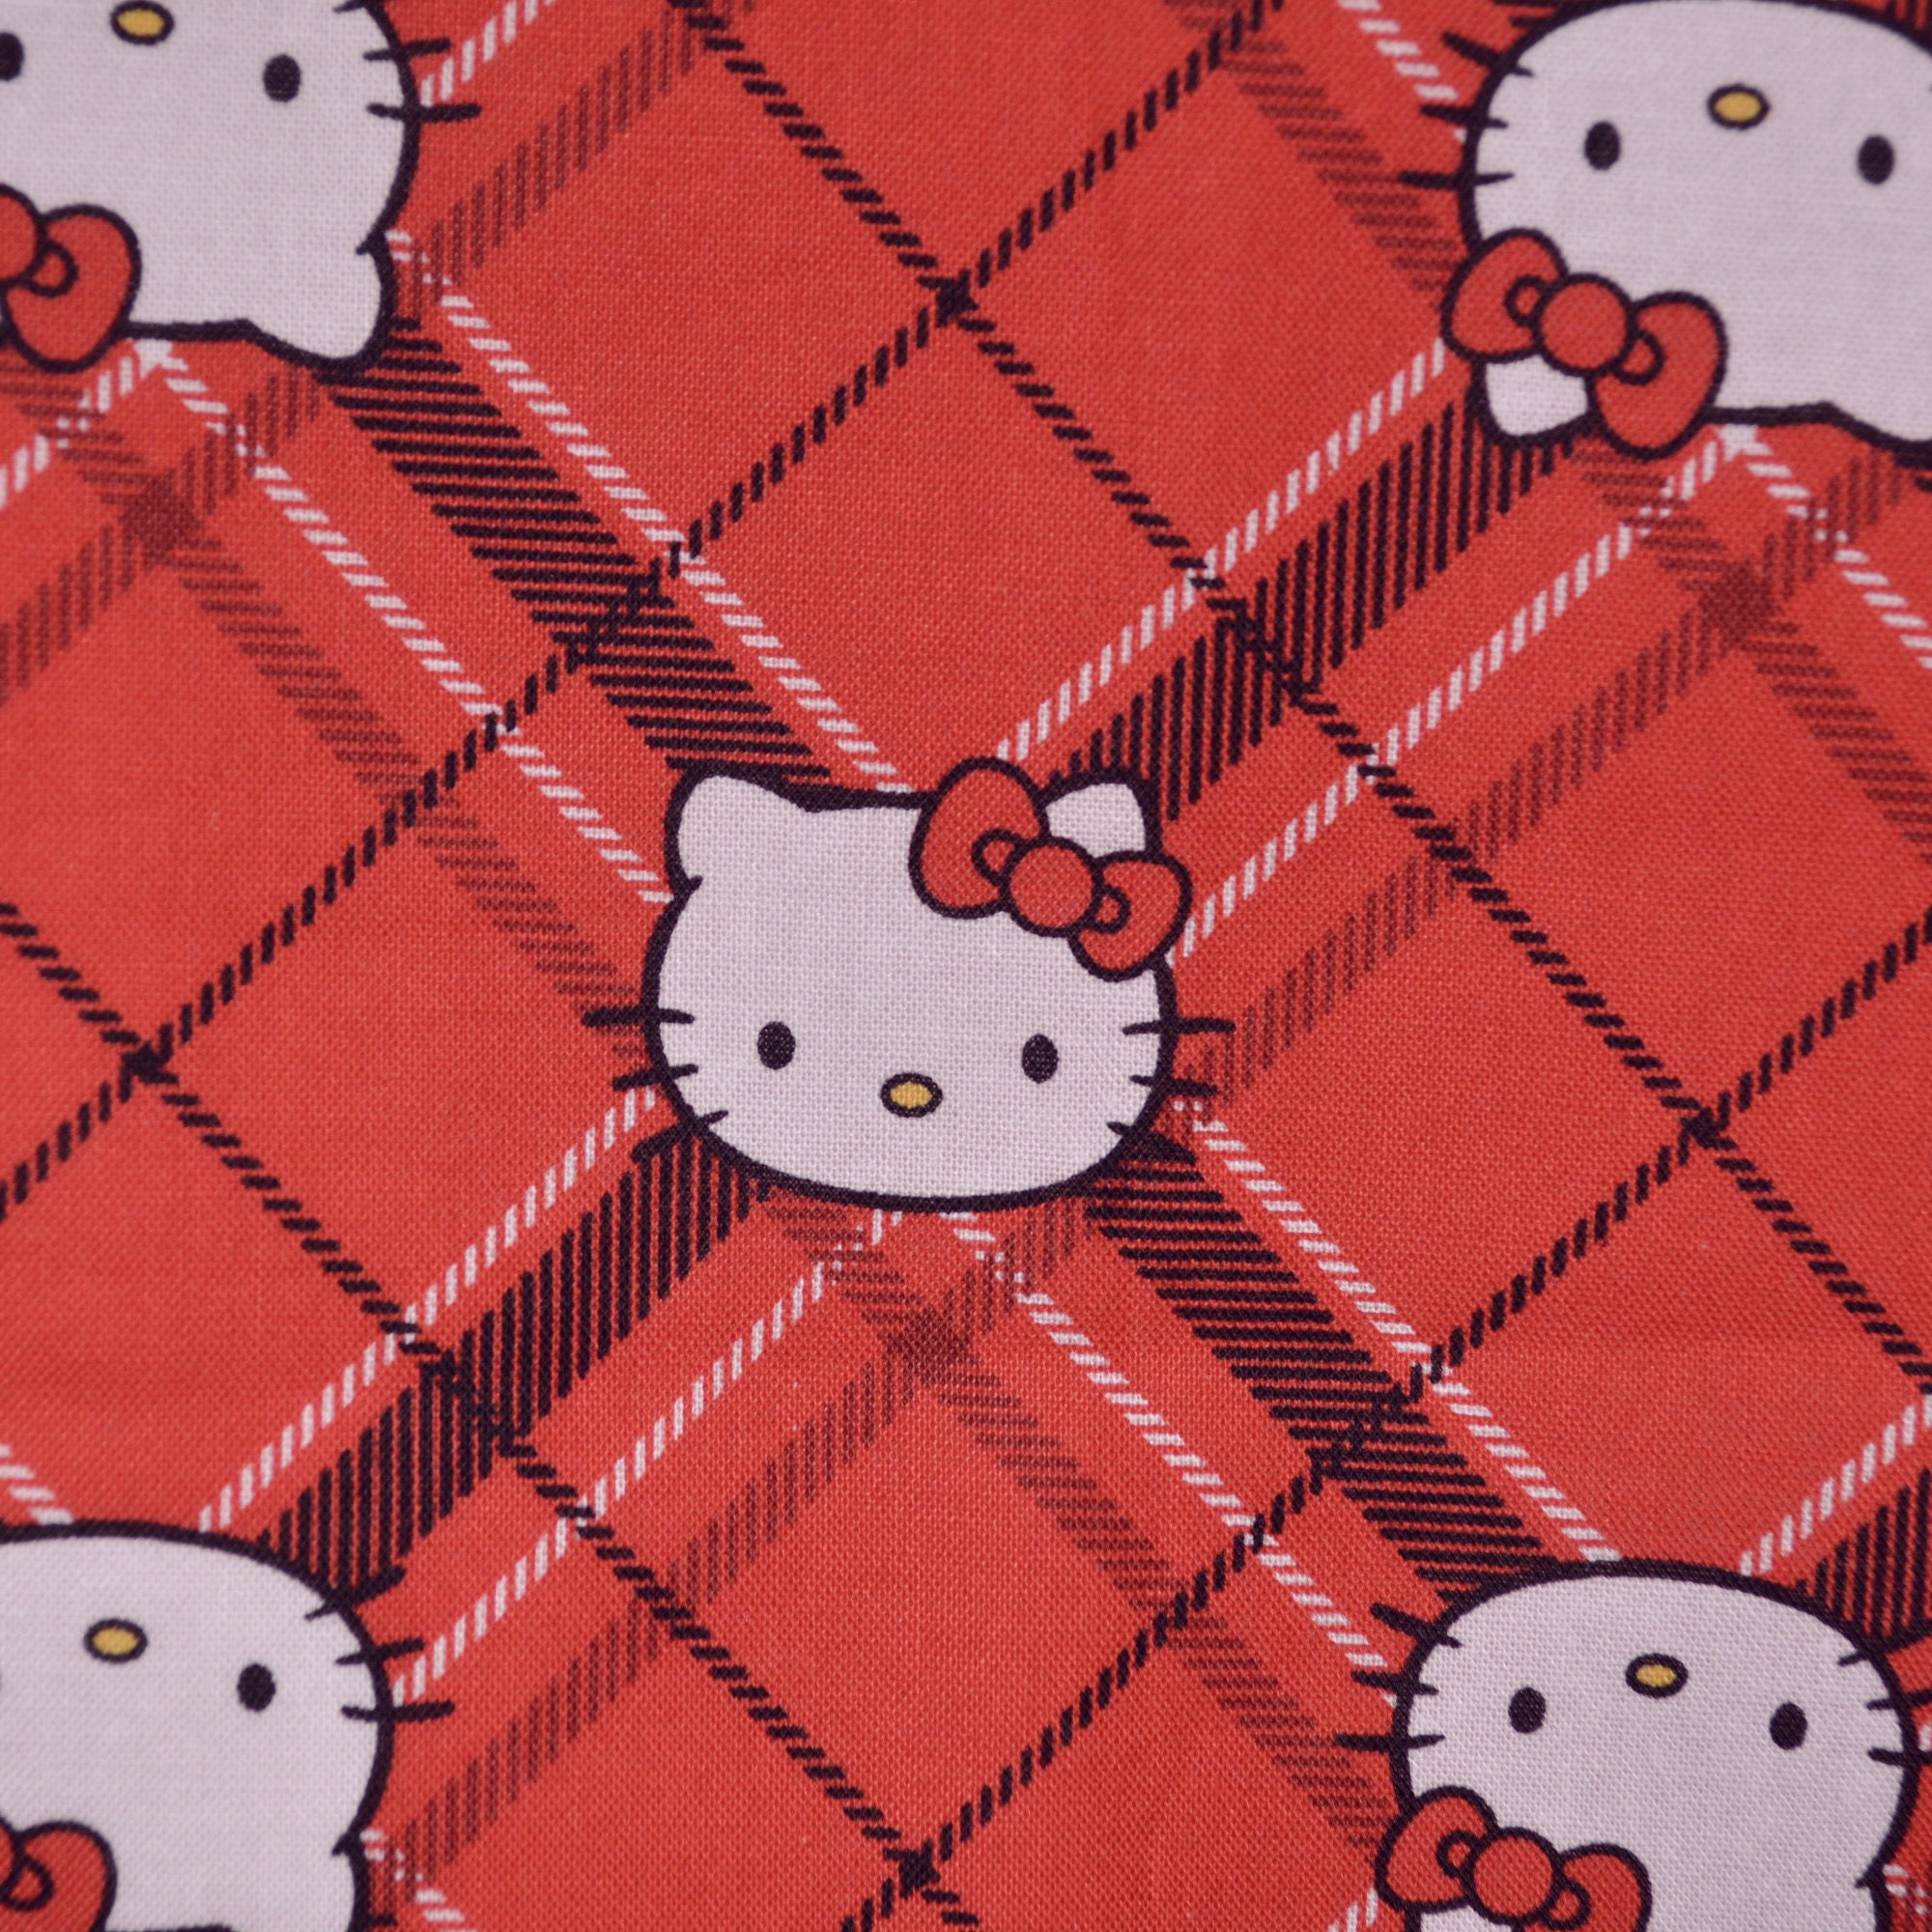 Nếu bạn đang tìm kiếm một vải Hello Kitty Đỏ để làm quà tặng cho bạn bè và gia đình của mình hoặc để tự làm đồ handmade, thì đây là sự lựa chọn hoàn hảo cho bạn. Chất liệu vải tốt cùng với hình ảnh Hello Kitty đáng yêu sẽ mang lại sự thoải mái và vui vẻ cho bạn.